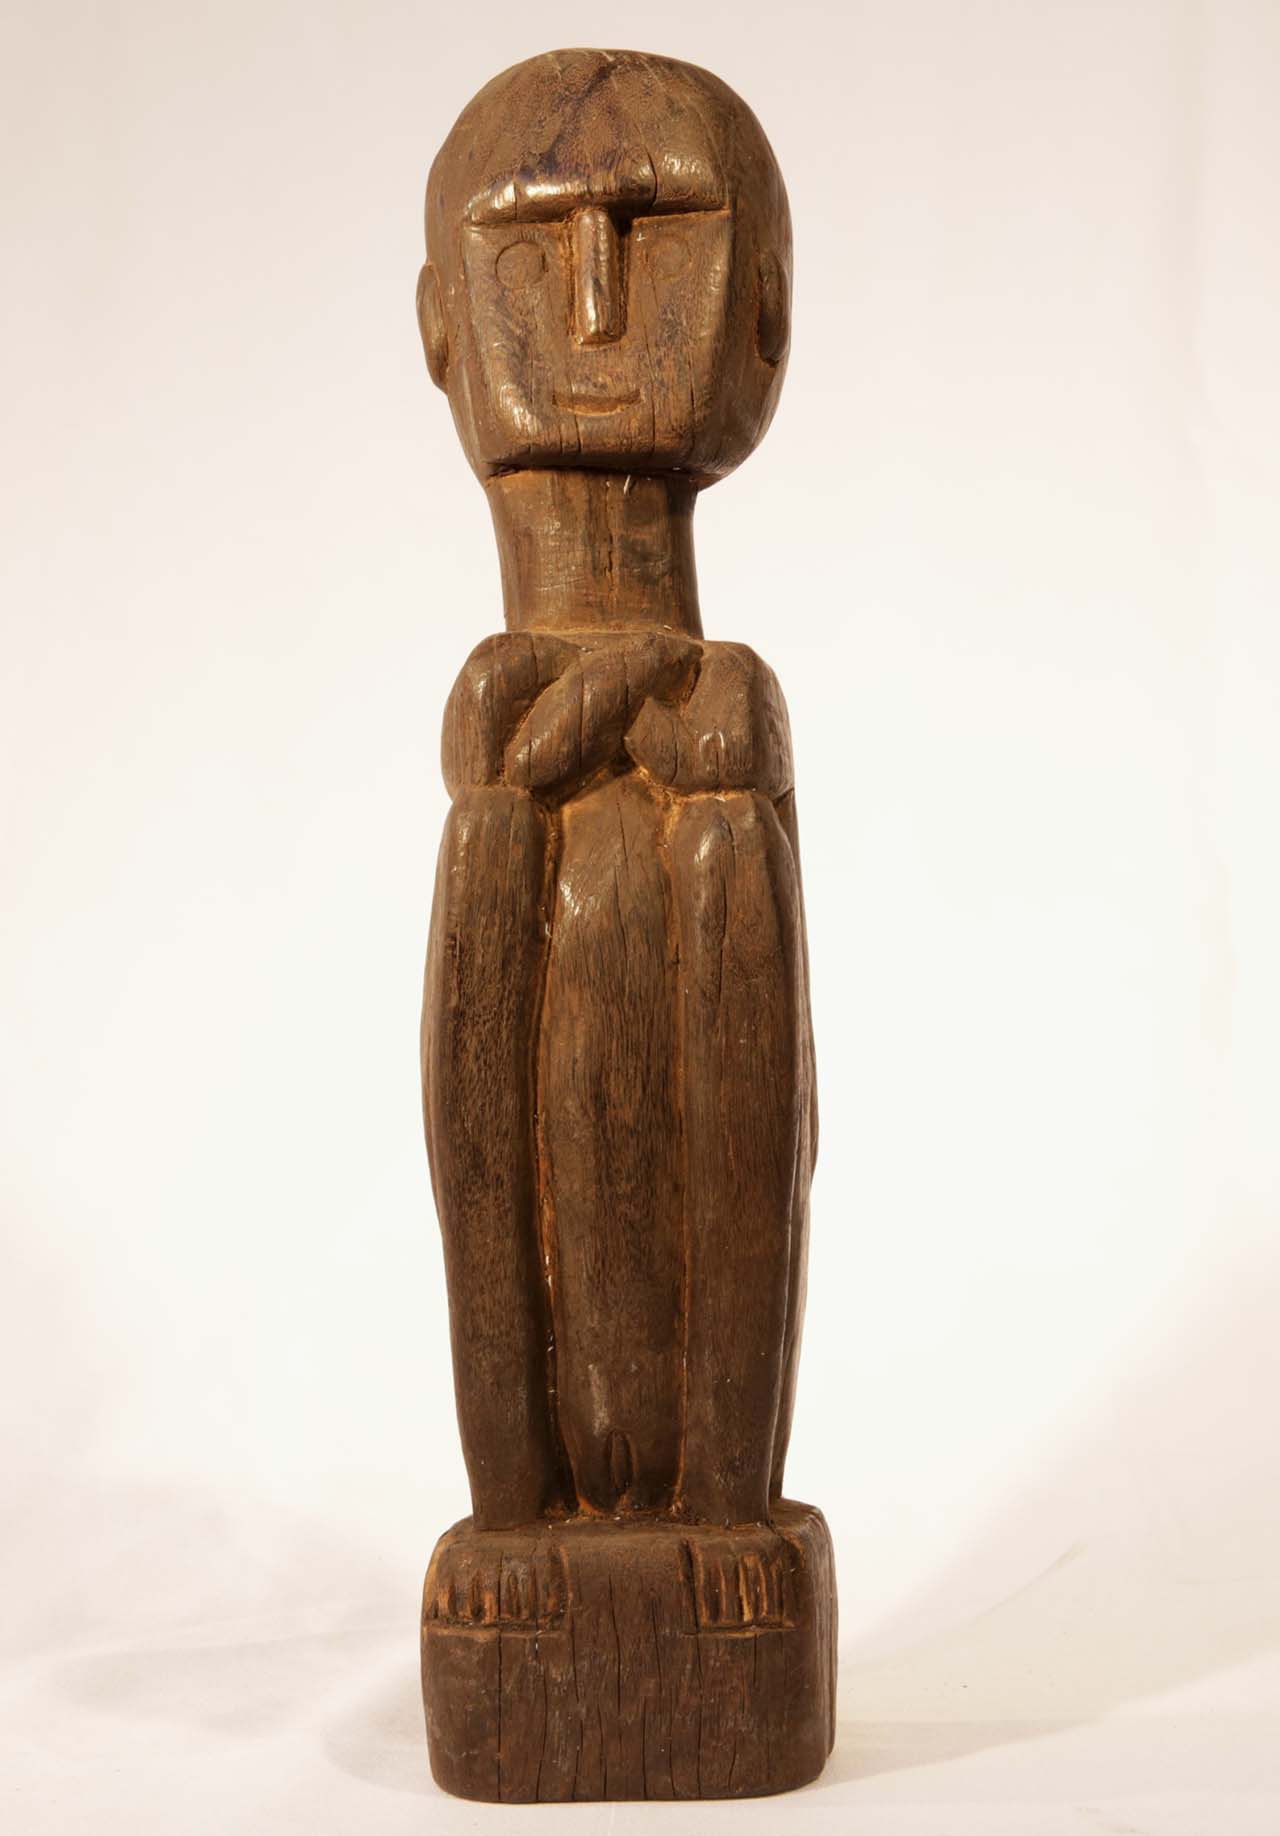 Timor Carvings - Buy Aboriginal Art Online at Japingka Gallery